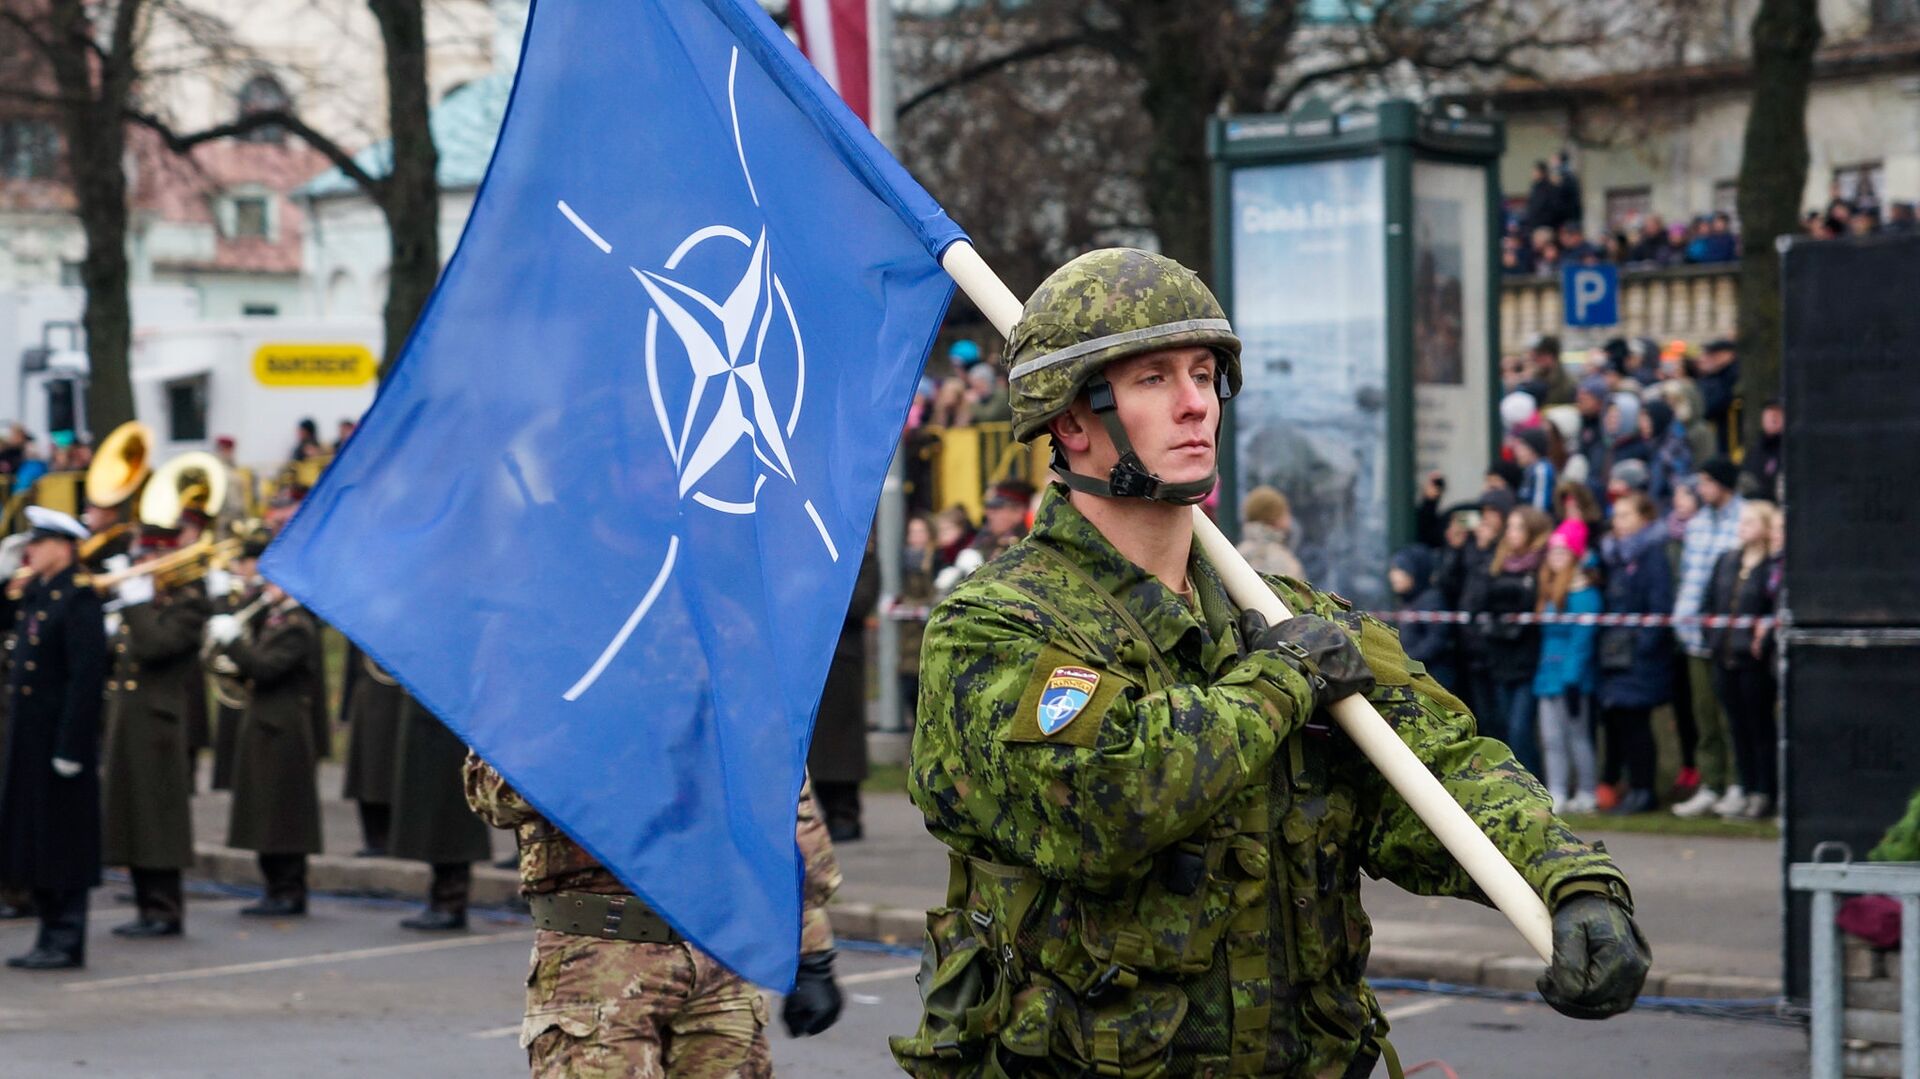 Военнослужащий Канады несет флаг НАТО на военном параде в Риге - Sputnik Латвия, 1920, 21.12.2021